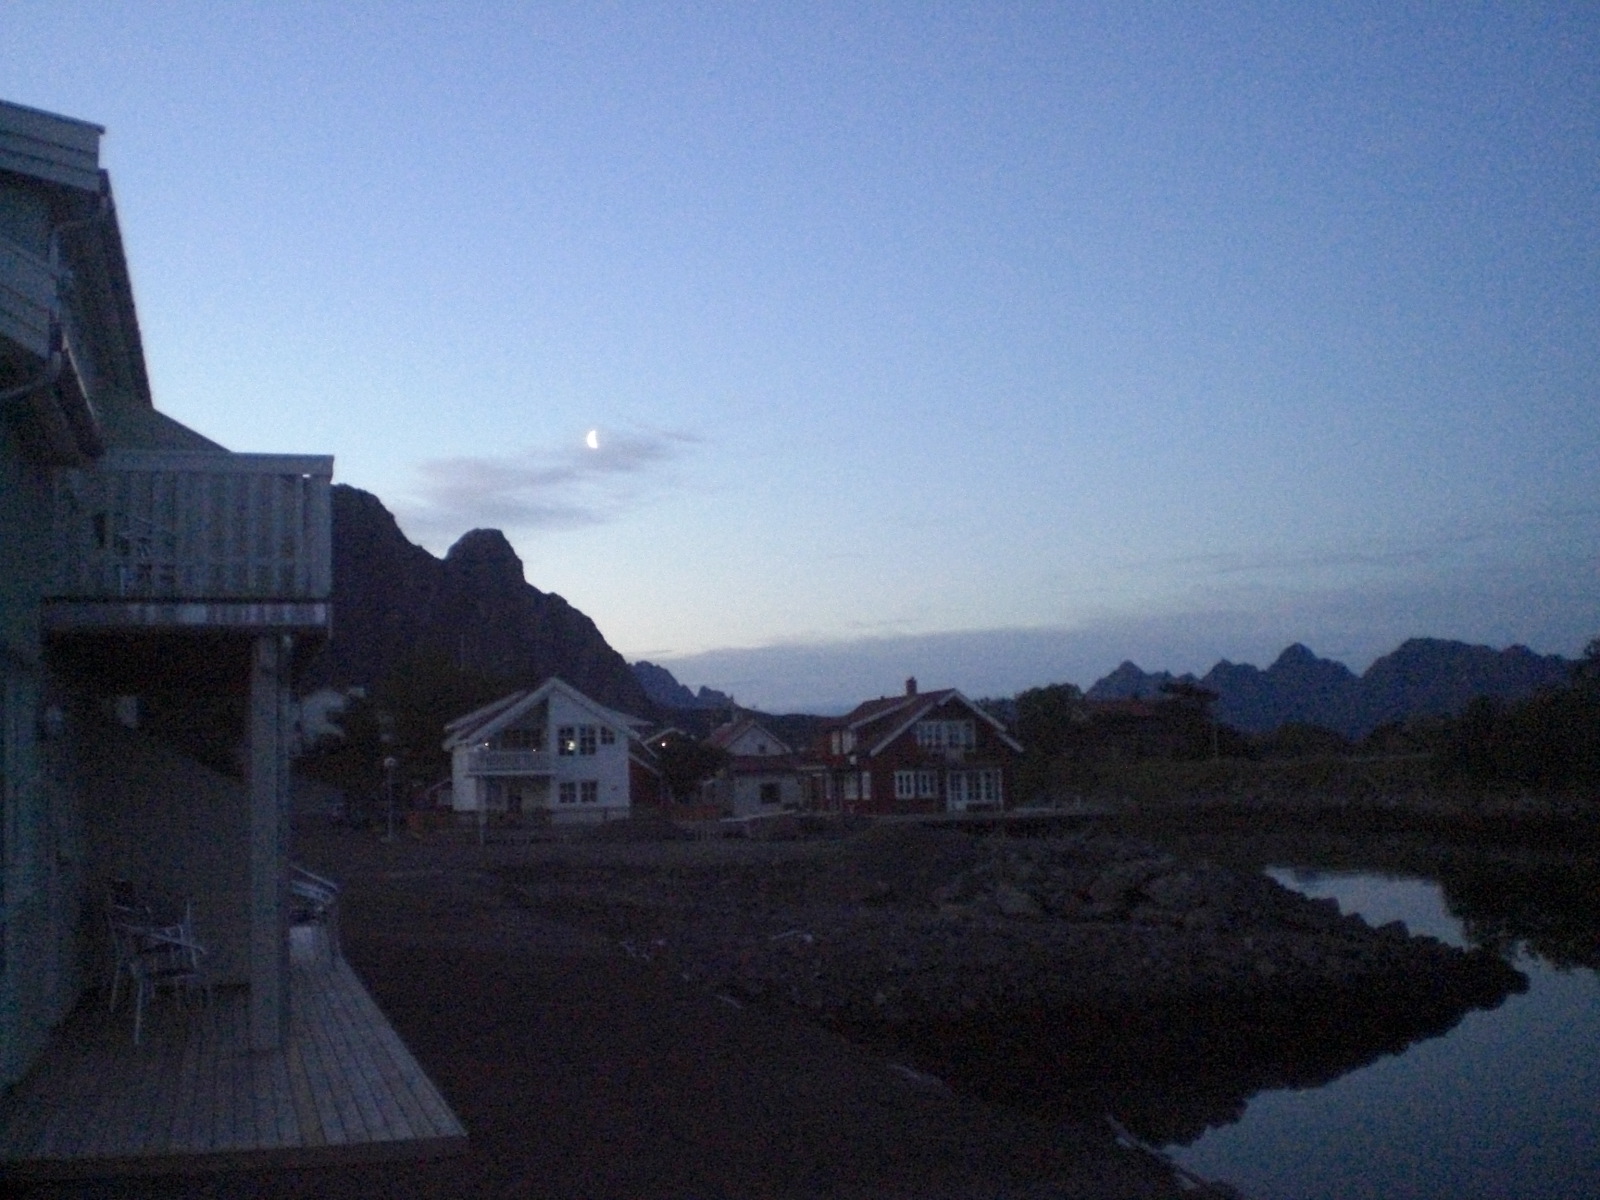 Norway: The Lofoten Islands & Oslo